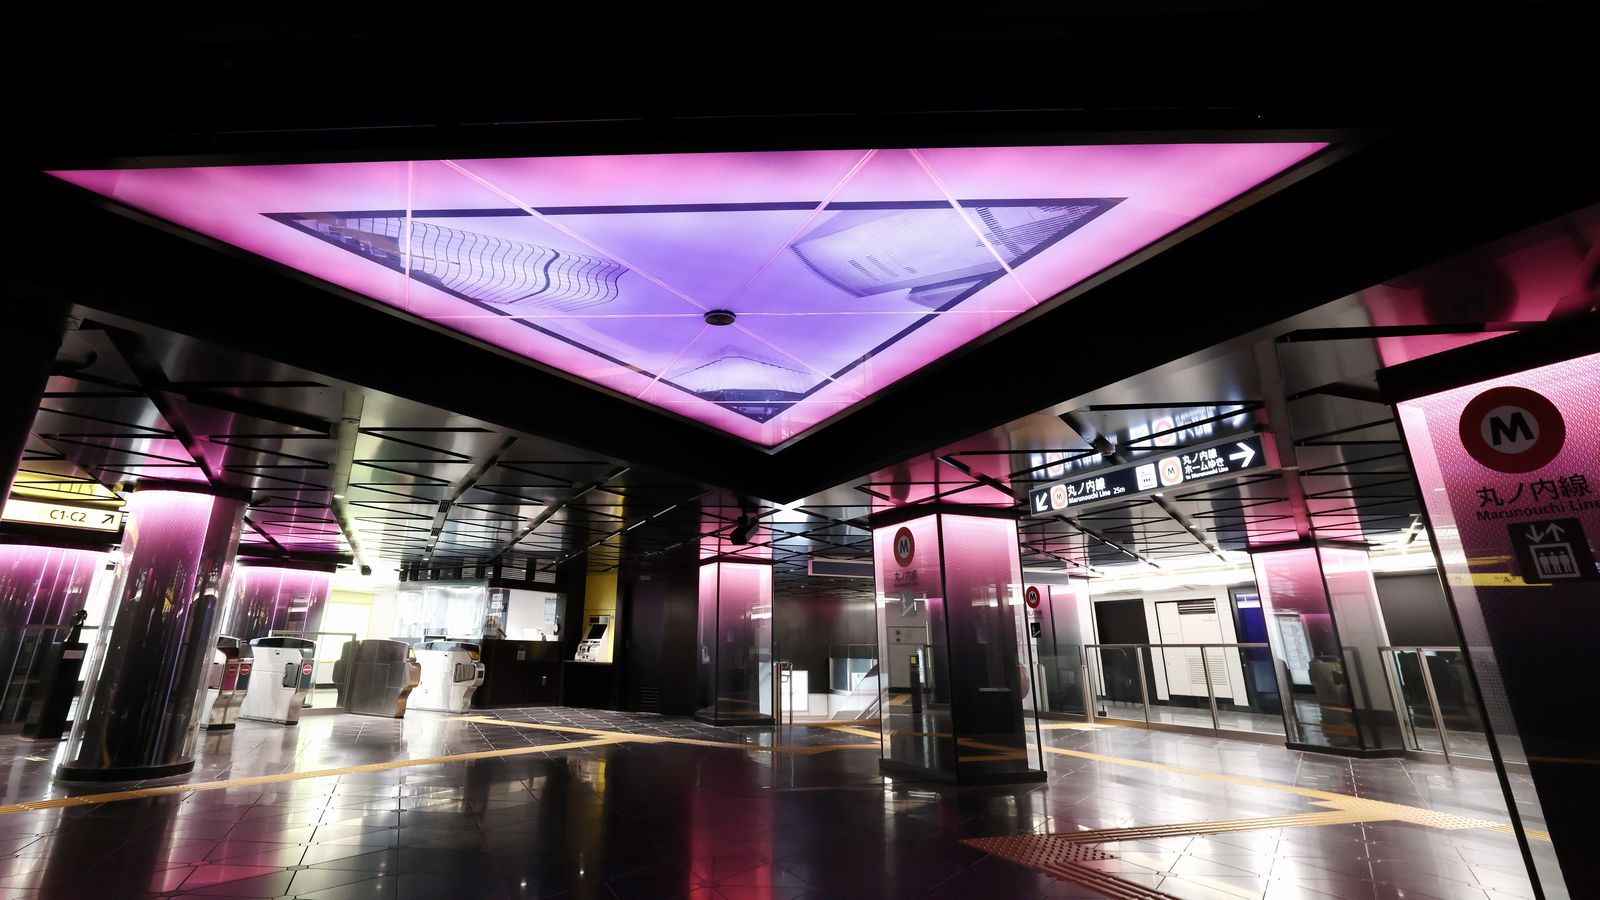 メトロ銀座駅を大改装､必見｢光の演出｣の狙い 地下鉄のシンボル駅､ラインカラーの光で一新 | 通勤電車 | 東洋経済オンライン